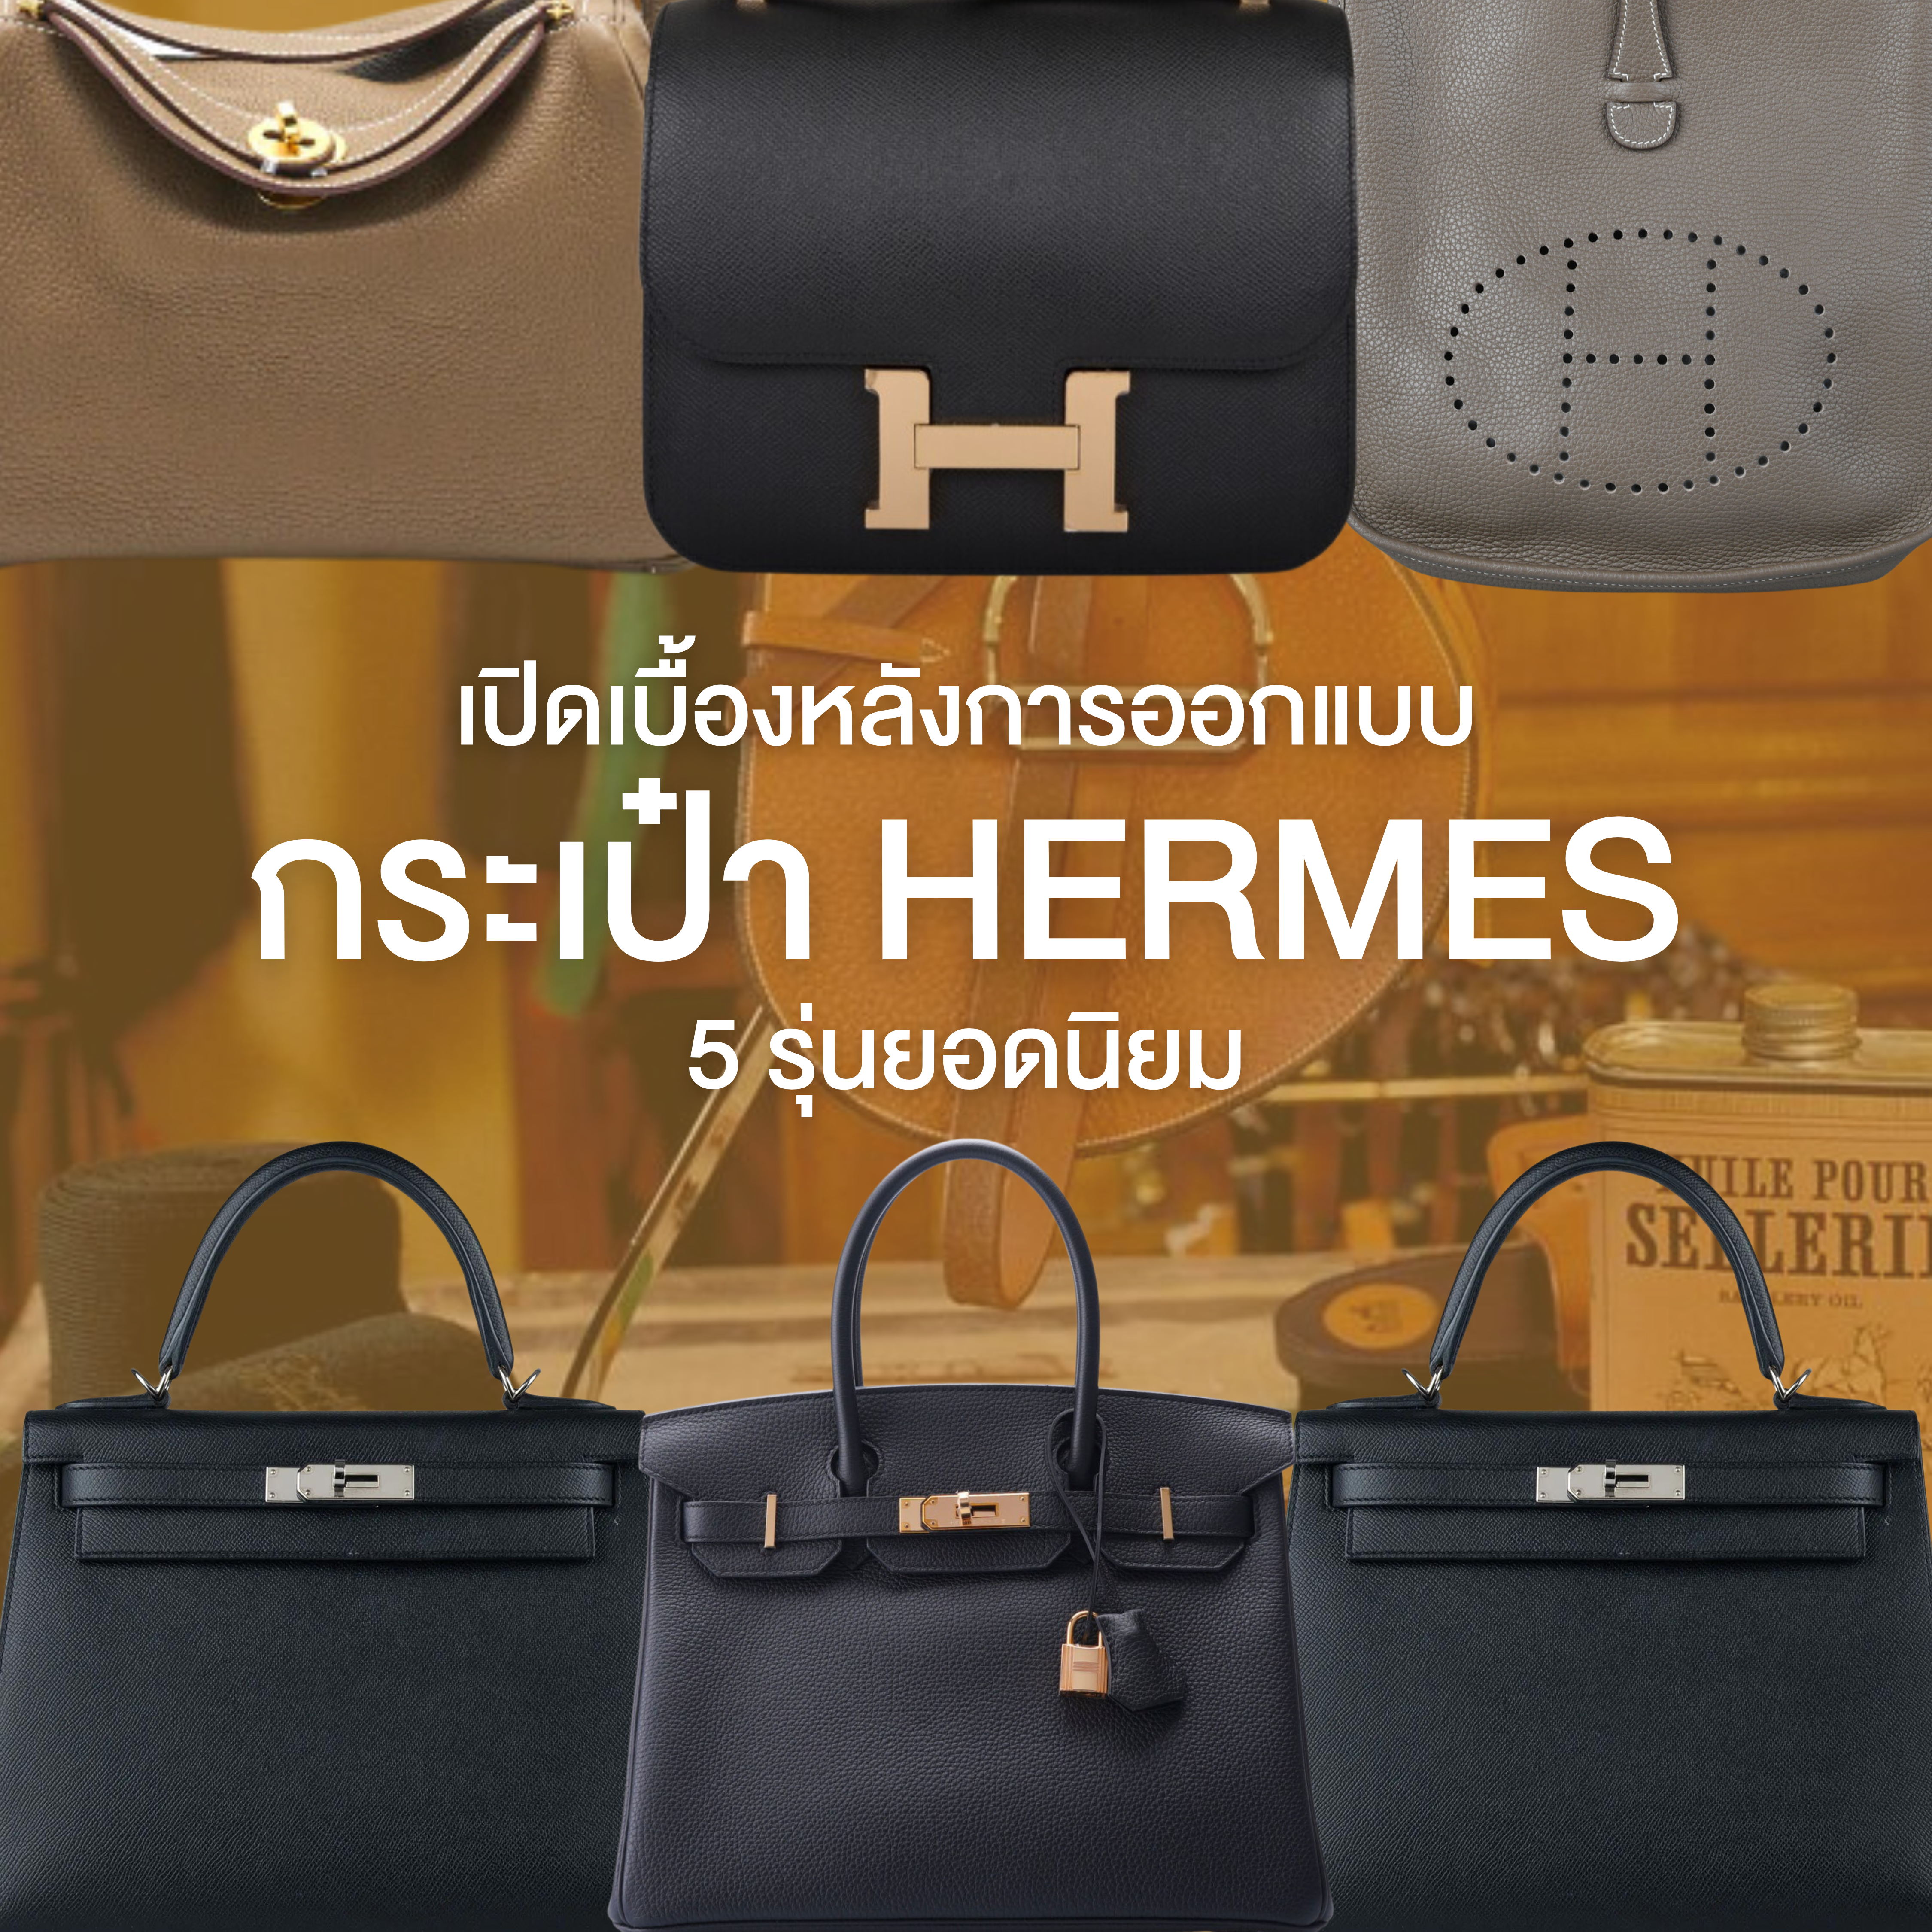 เปิดเบื้องหลังการออกแบบ ชื่อกระเป๋า Hermes ทั้ง 5 รุ่น